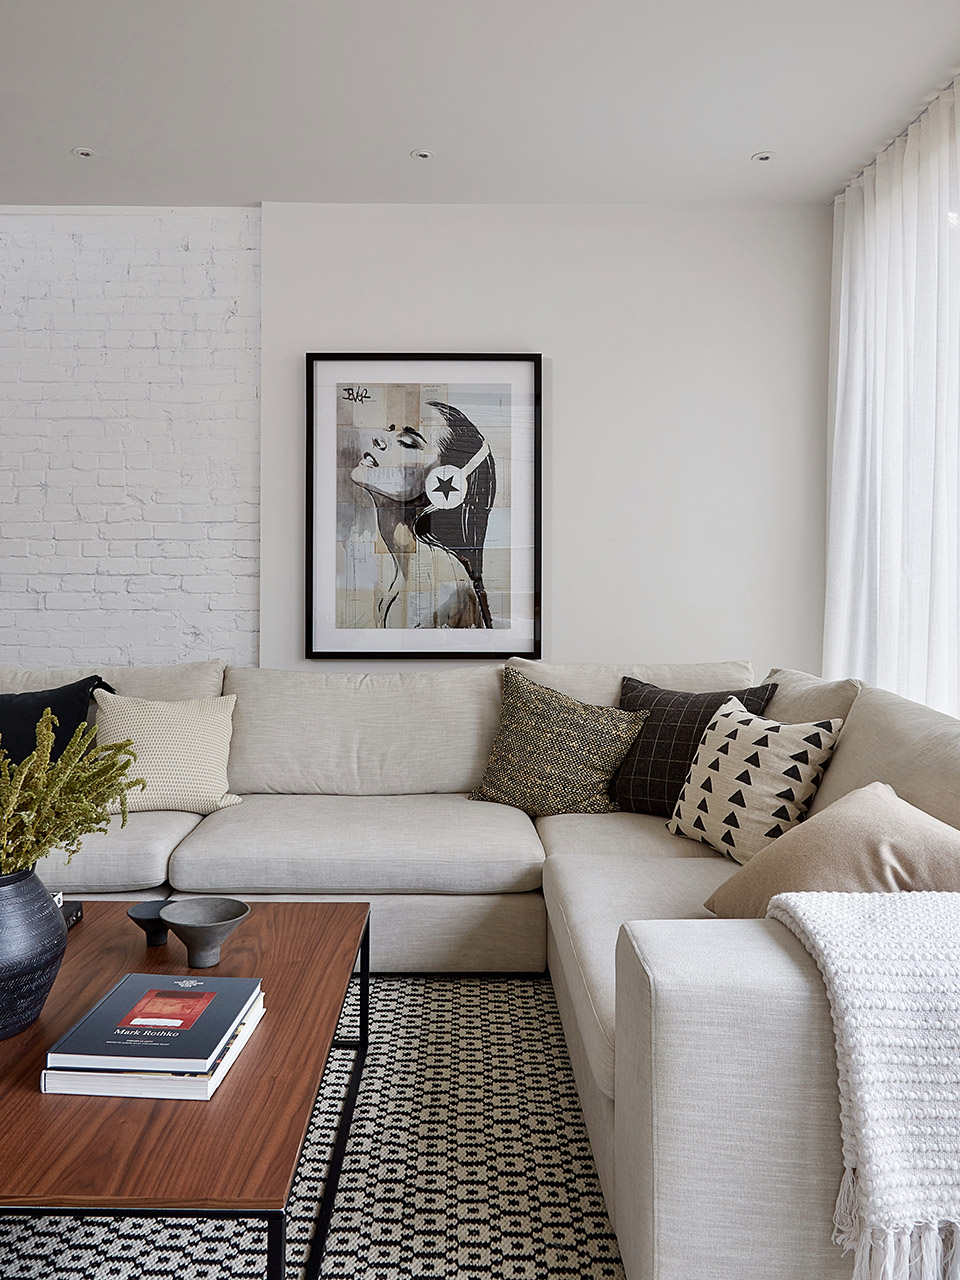 极简工业风风格室内家装案例效果图-客厅沙发